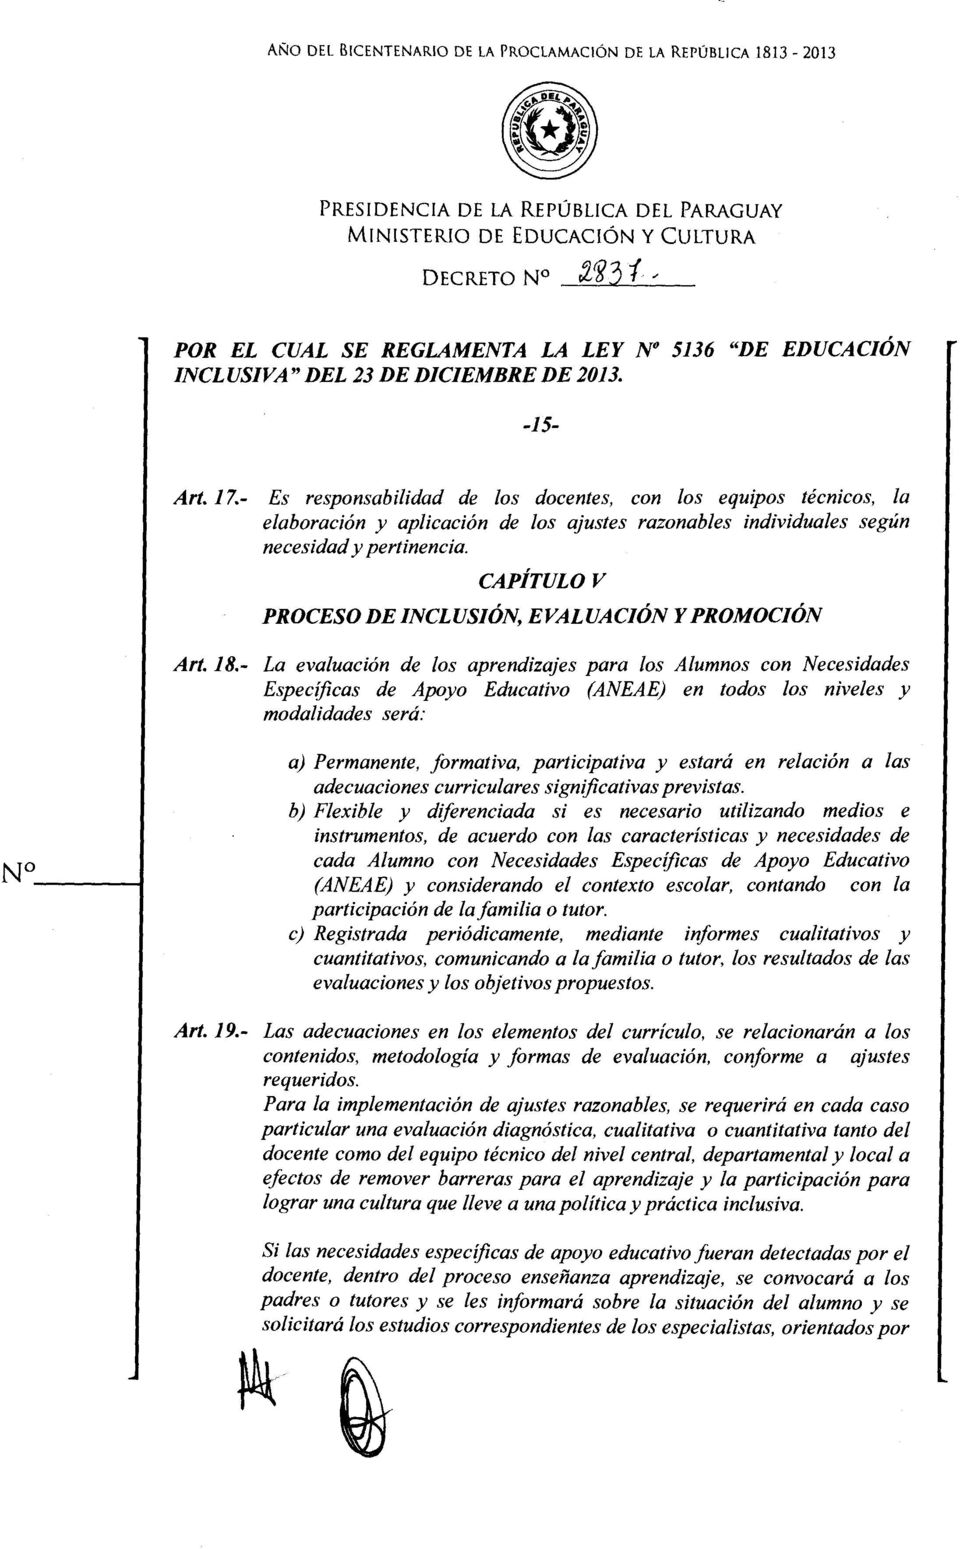 CAPÍTULO V PROCESO DE INCLUSIÓN, EVALUACIÓN Y PROMOCIÓN Art. 18.